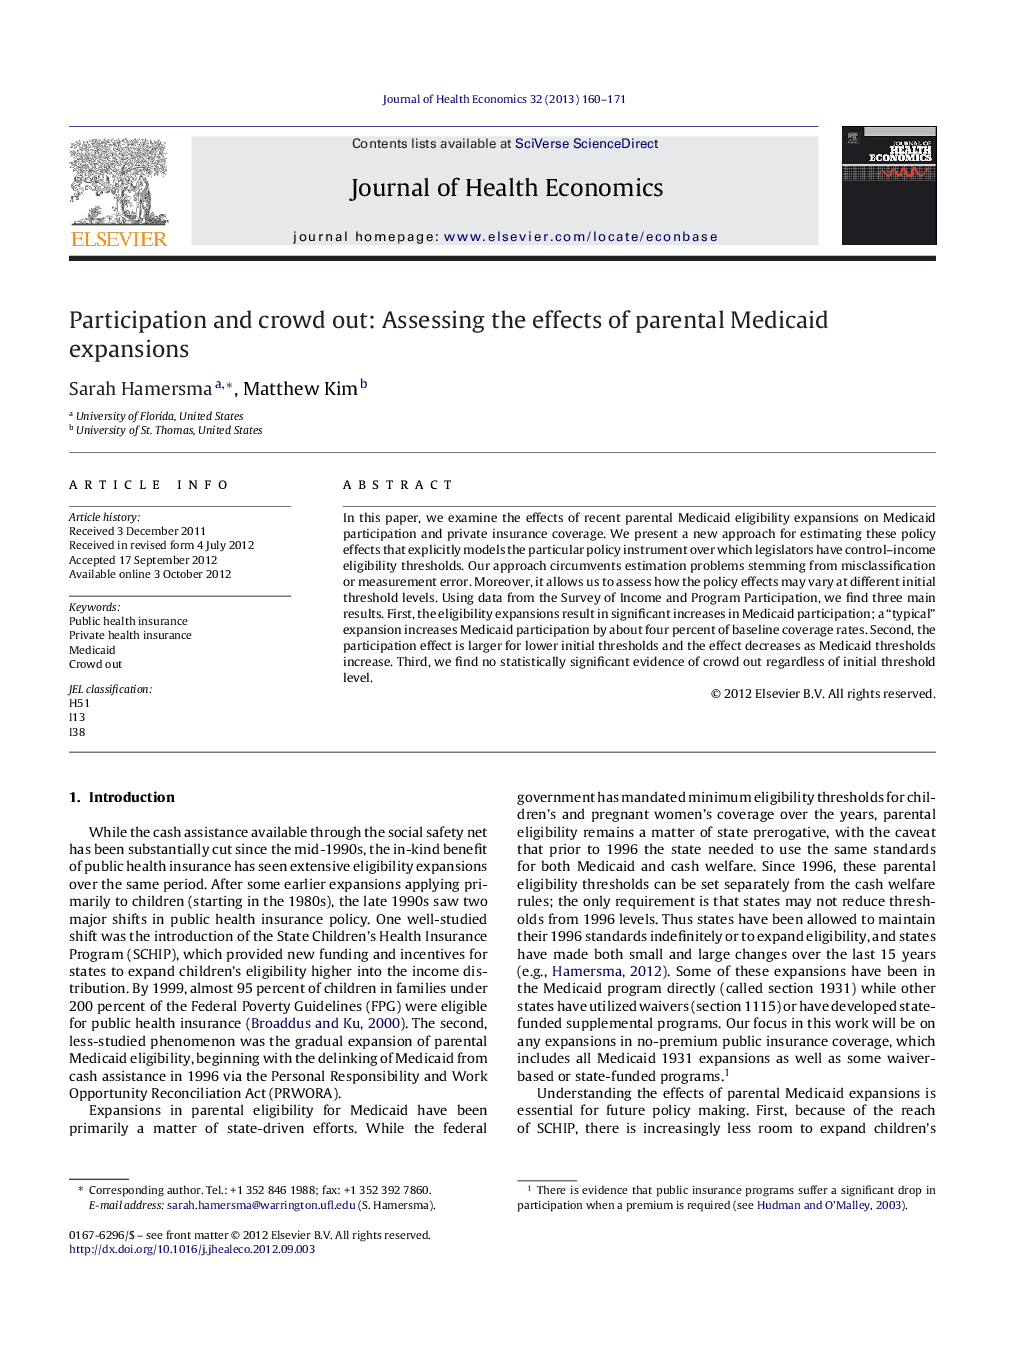 مشارکت و بیرون راندن جمعیت: ارزیابی اثرات توسعه پزشکی والدین